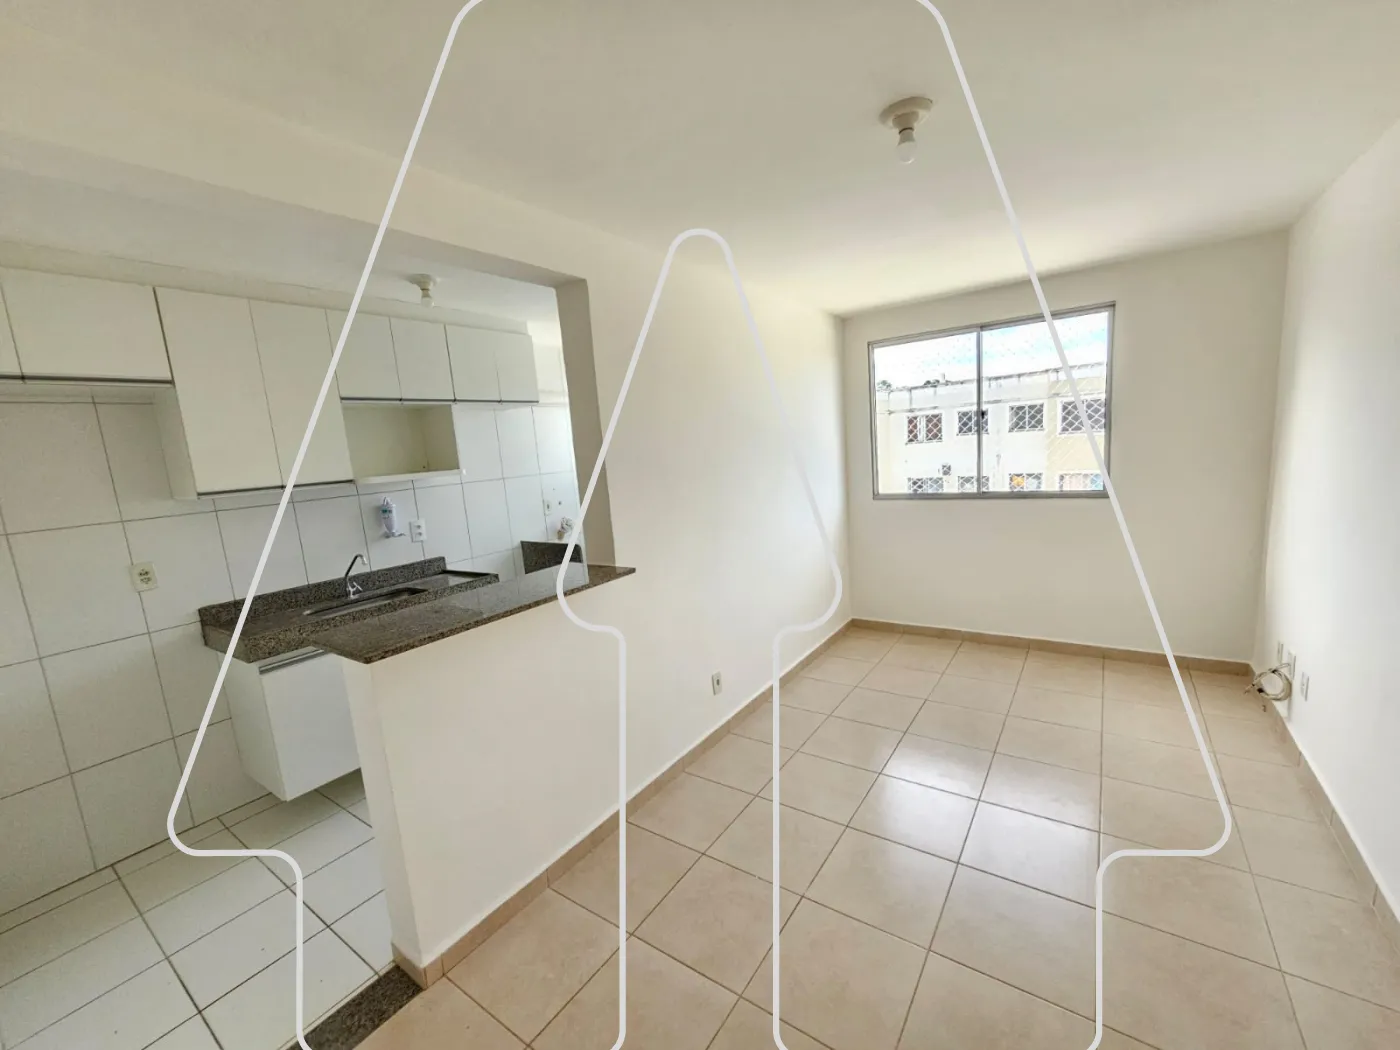 Alugar Apartamento / Padrão em Araçatuba R$ 900,00 - Foto 1